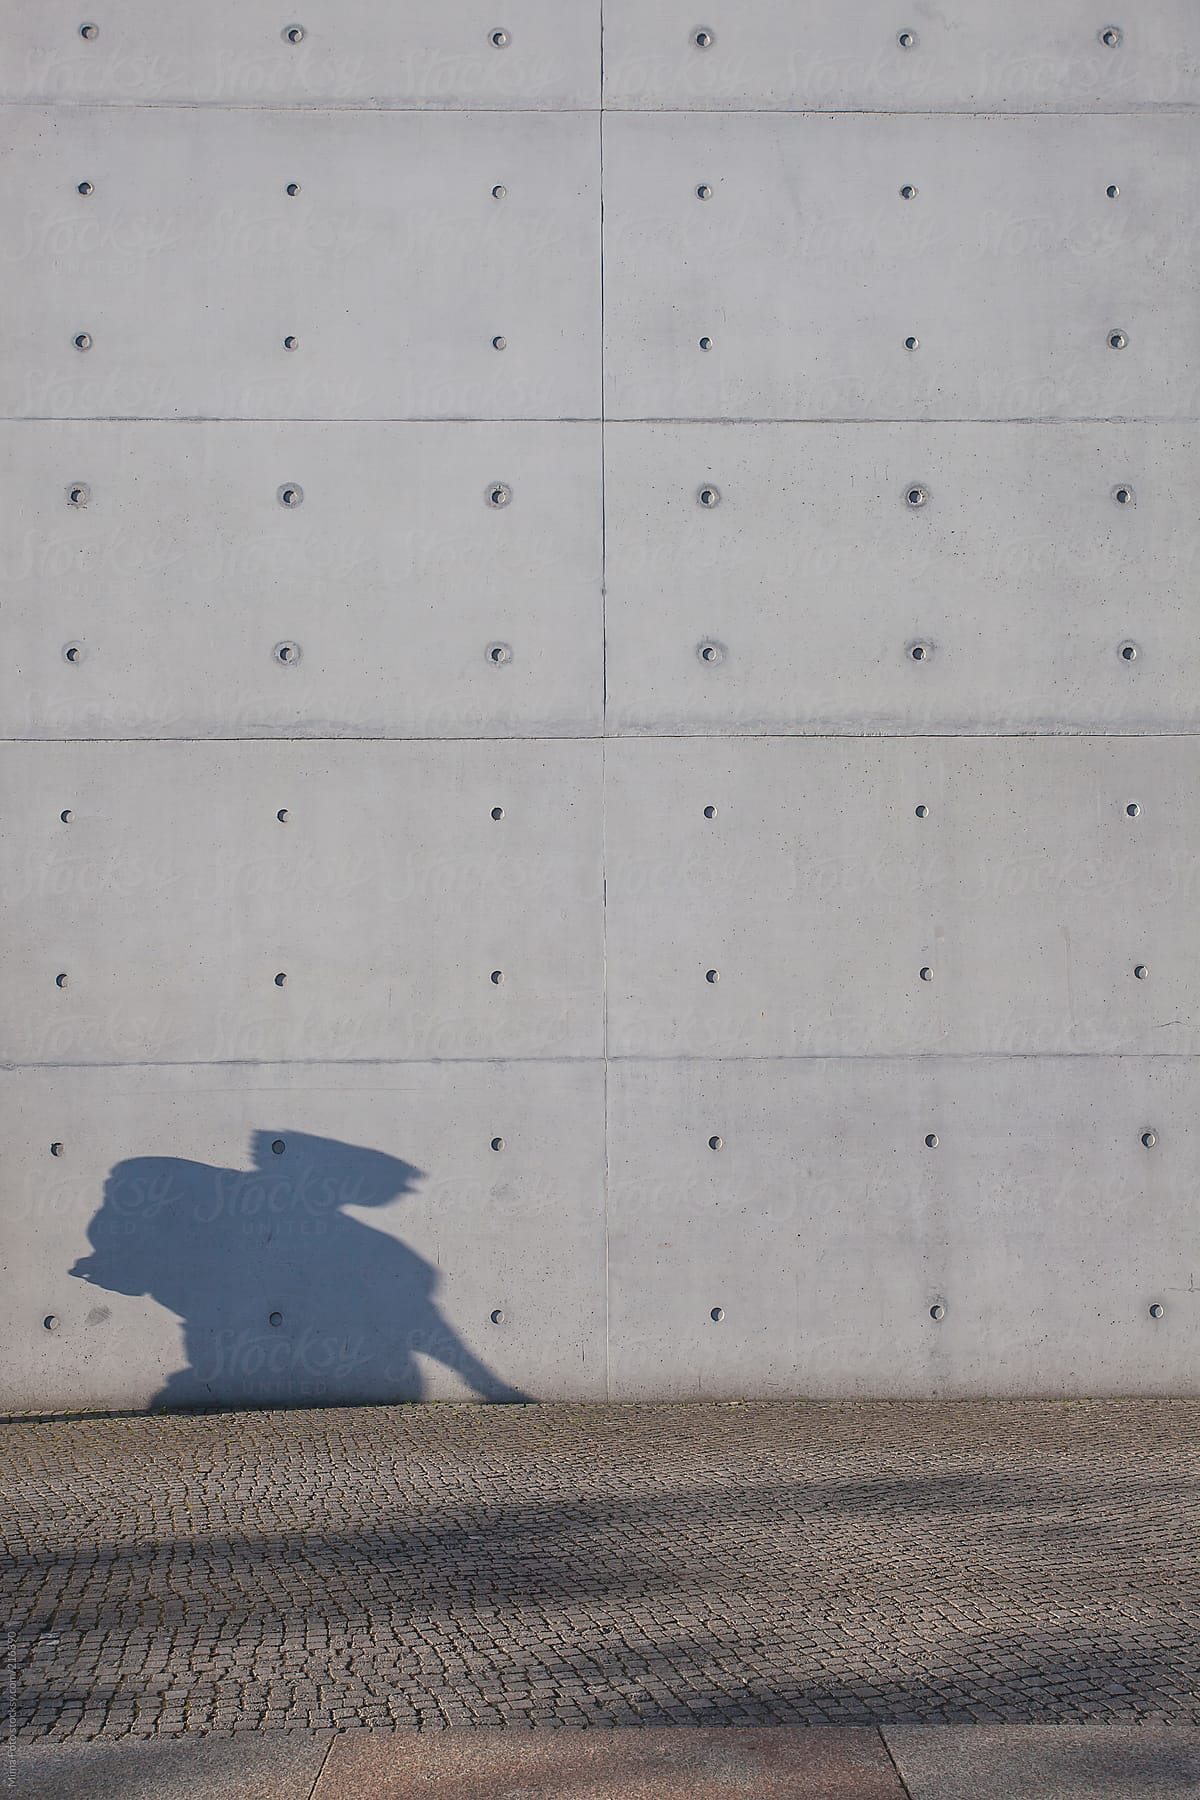 Shadow of Man walking, huge wall